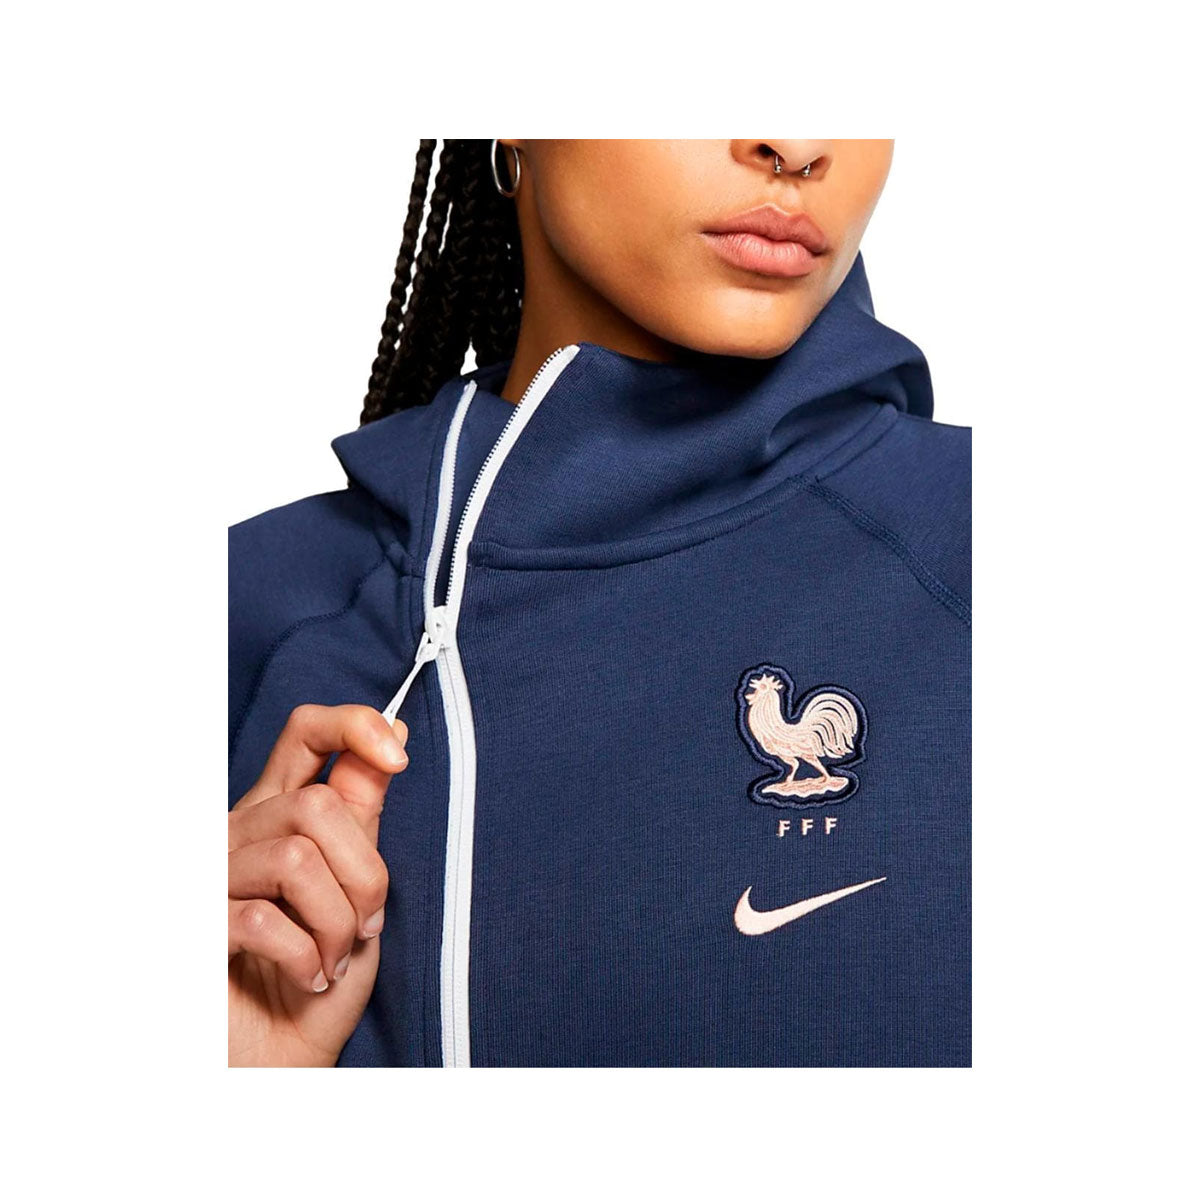 Nike Women's FFF Tech Fleece Hoodie